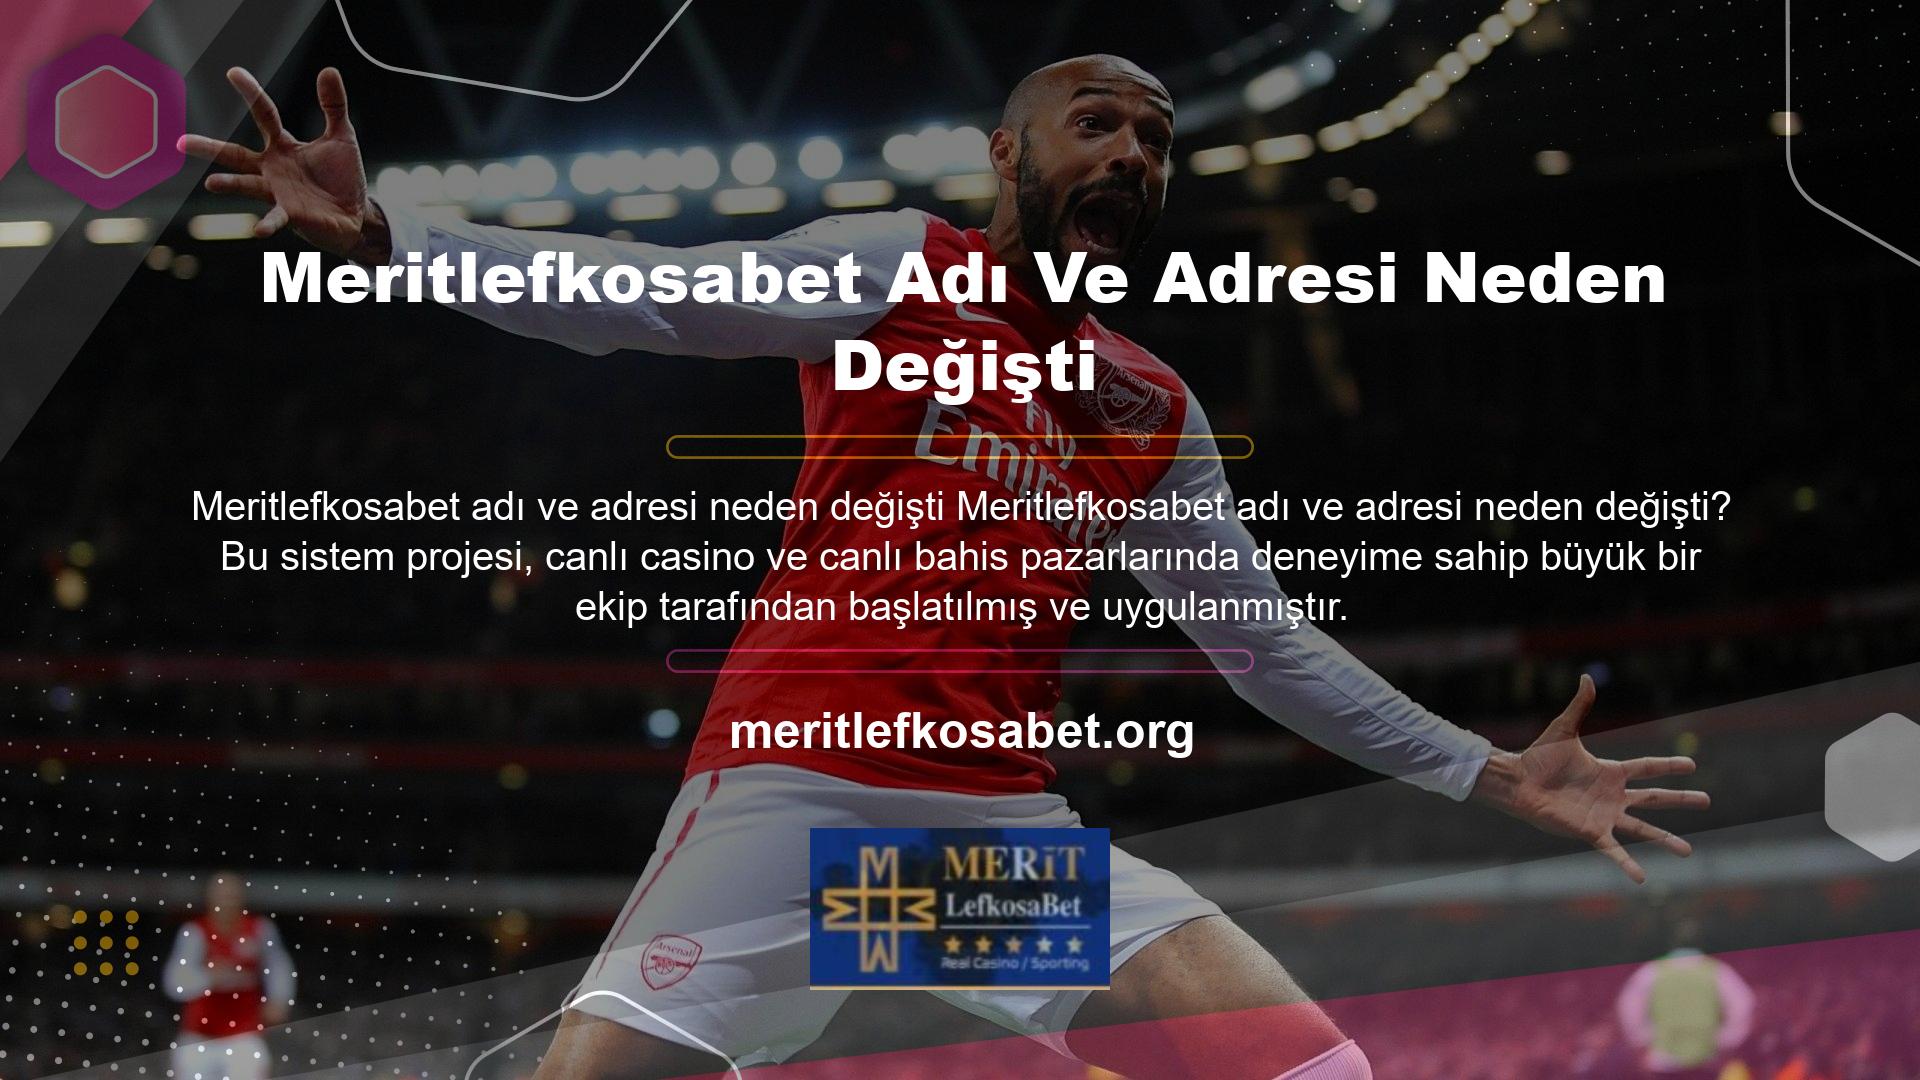 Meritlefkosabet ismini ve adresini neden değiştirdi Meritlefkosabet, canlı bahis ve canlı casino bölümünde üye ve üye arıyor, bu nedenle üyelerine kolay anlaşılır bir altyapı ve kullanıcı dostu bir web sitesi arayüzü sunuyor